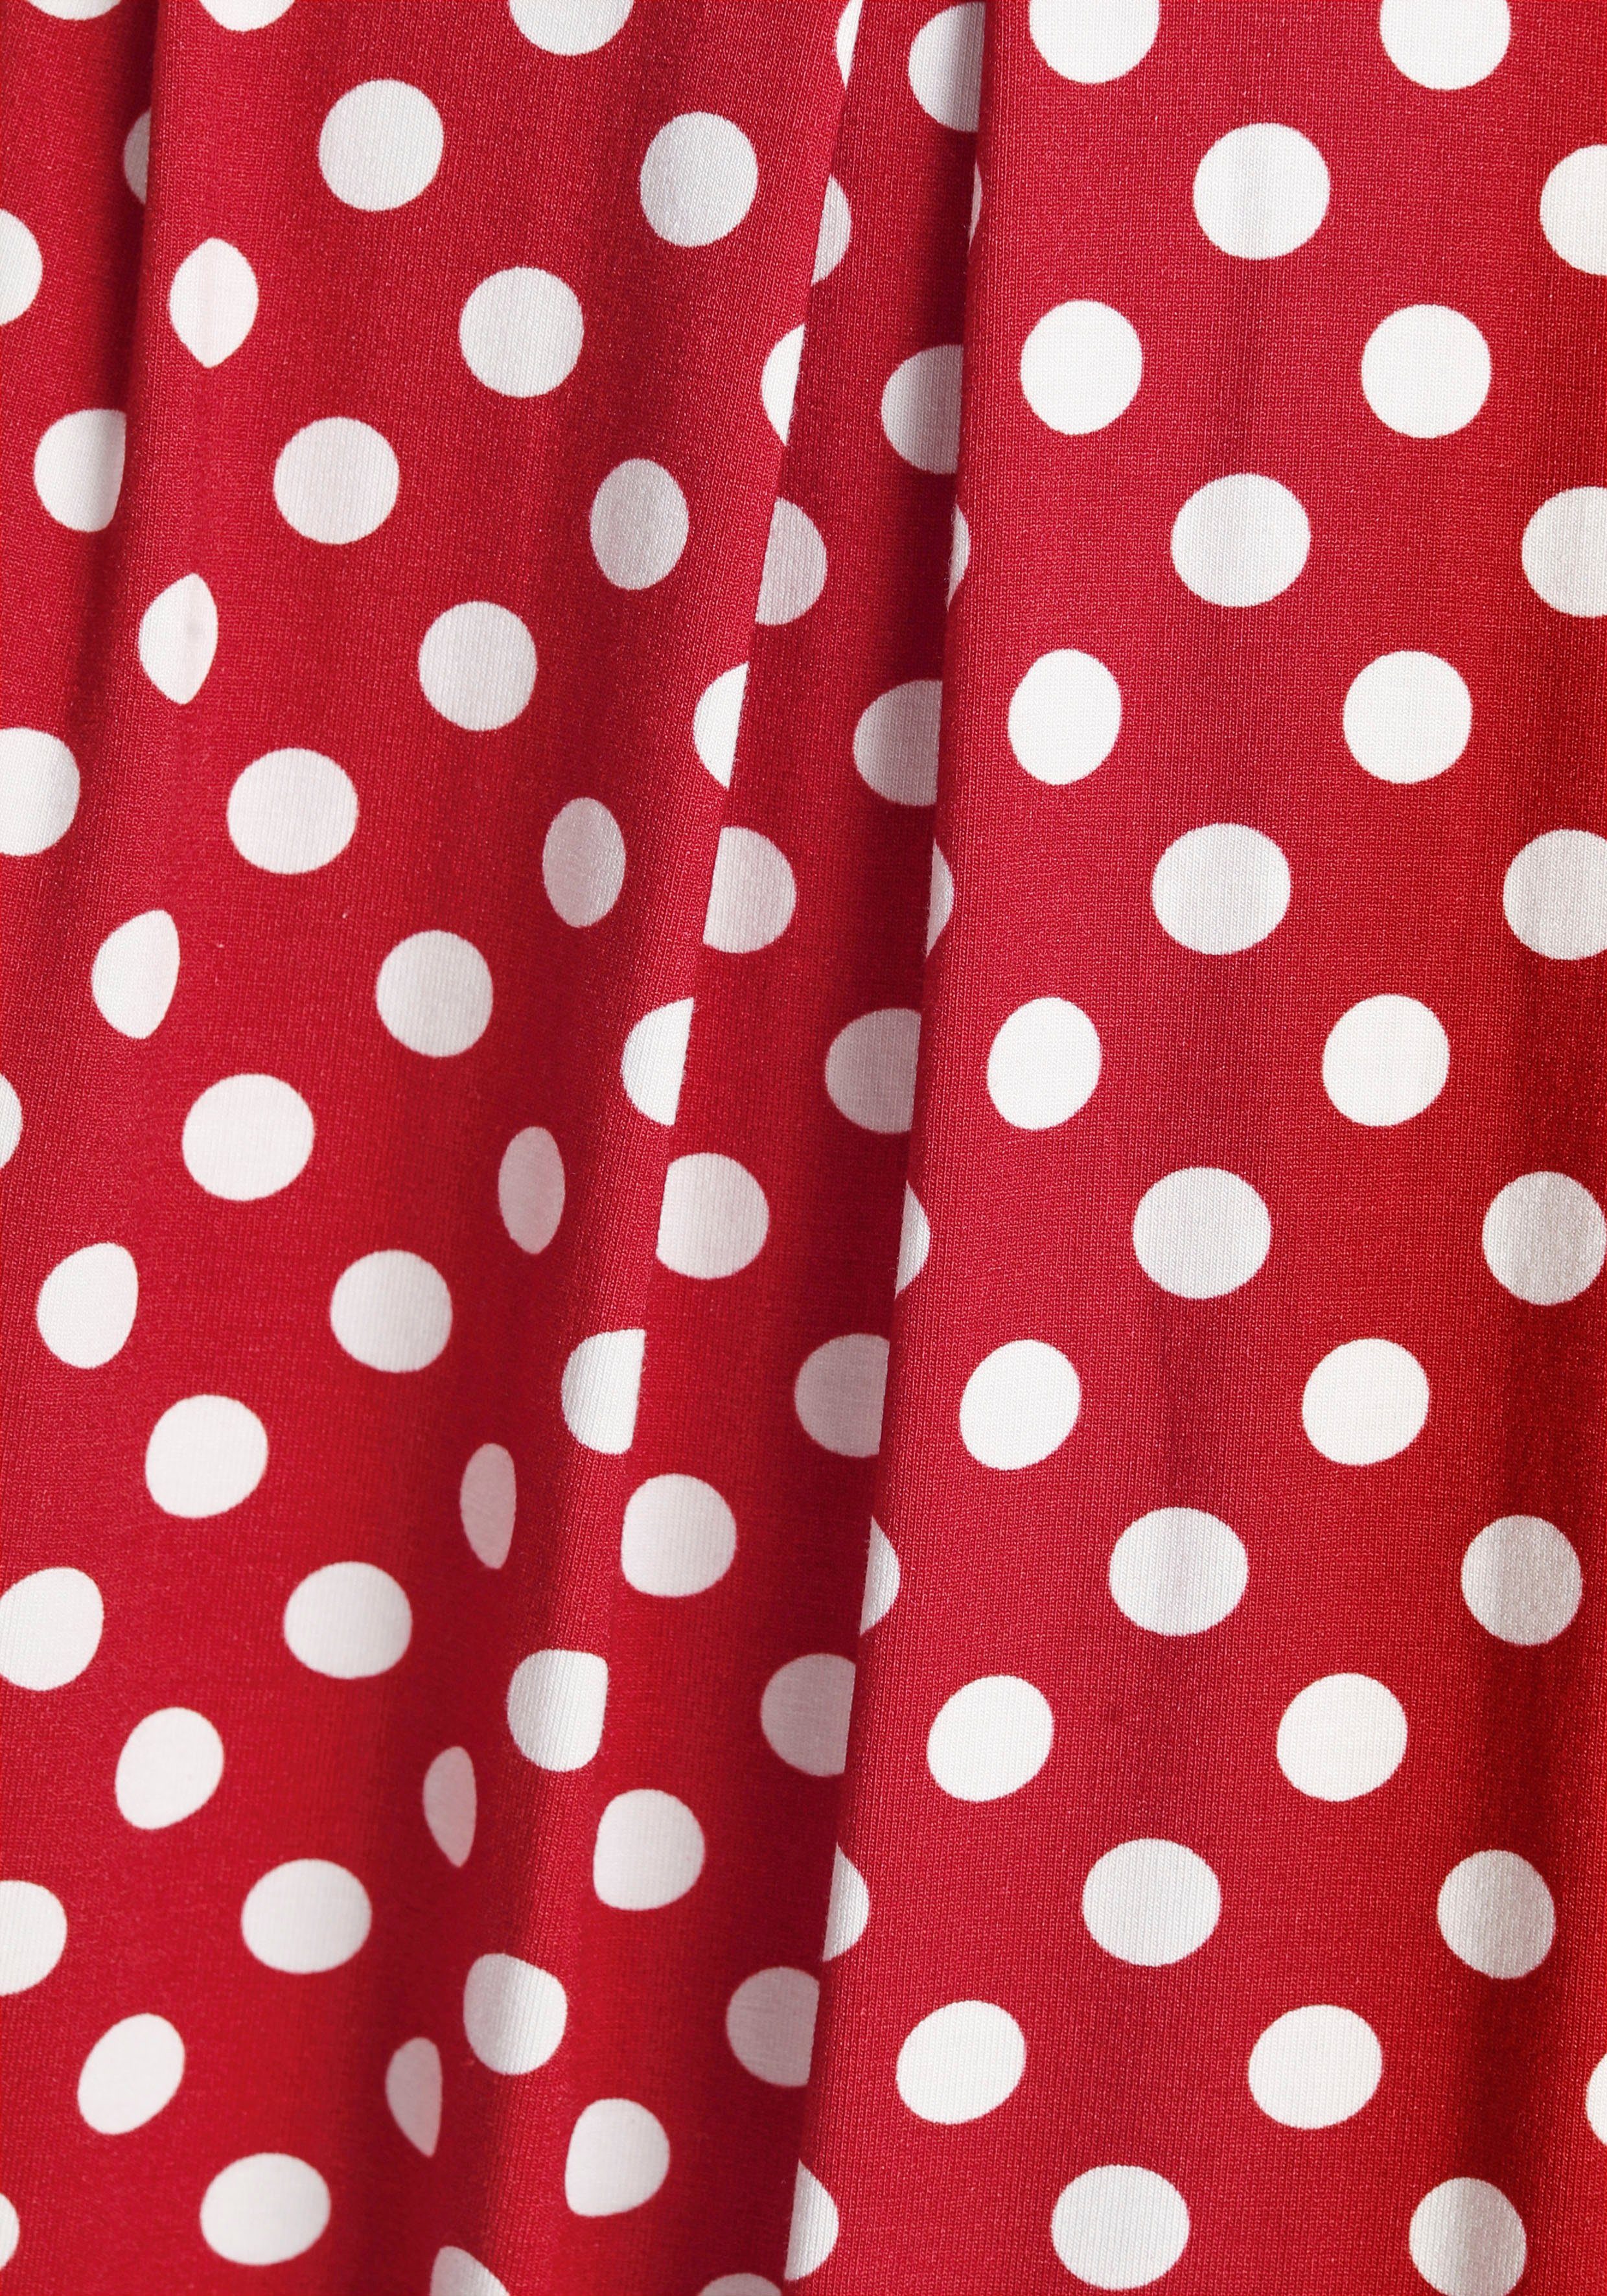 Boysen's Jerseykleid süßem rot, mit weiß Tupfen-Print